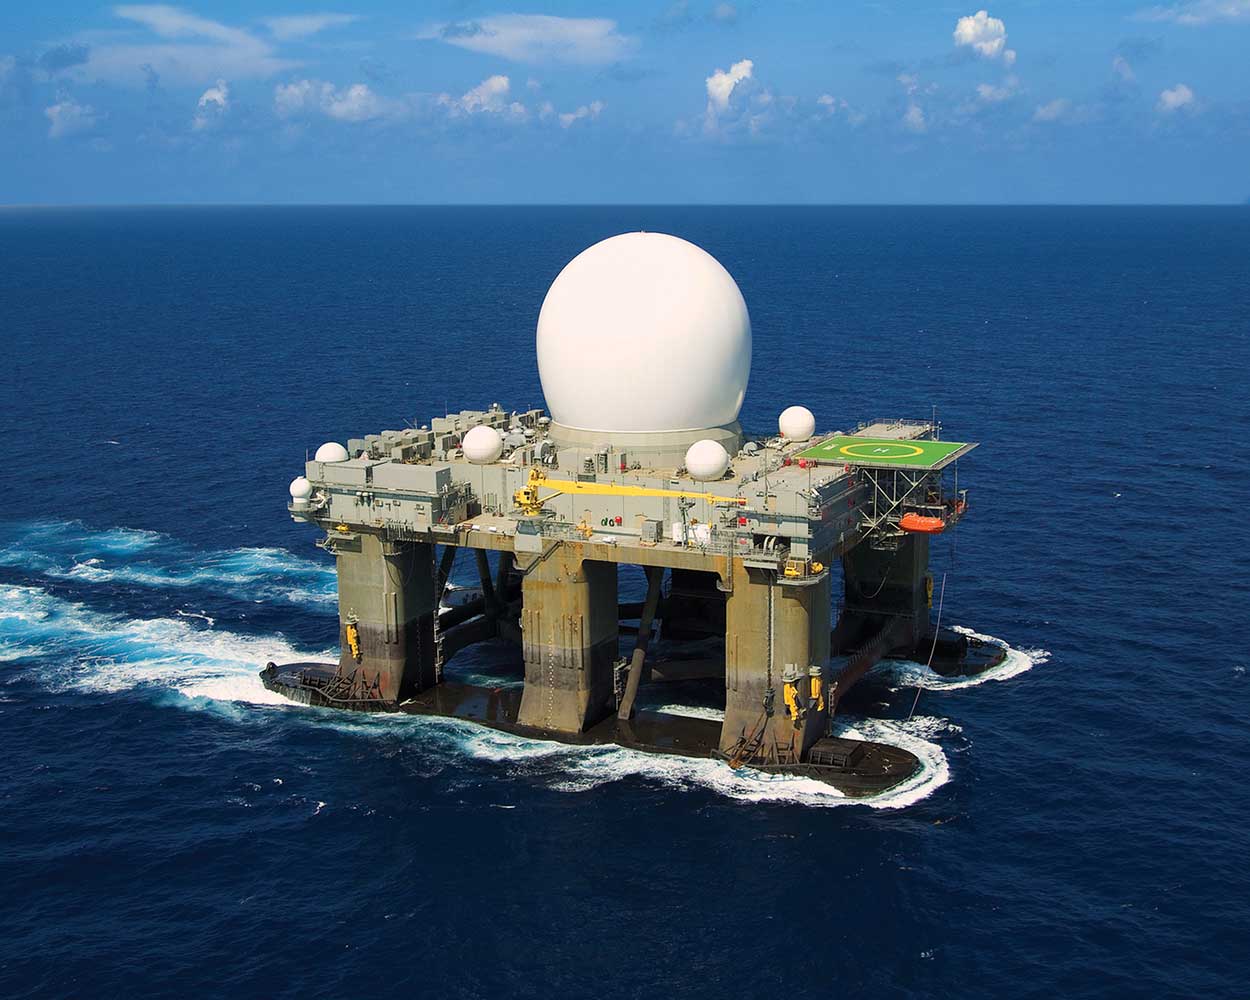 Large white antenna globe on dock station in ocean